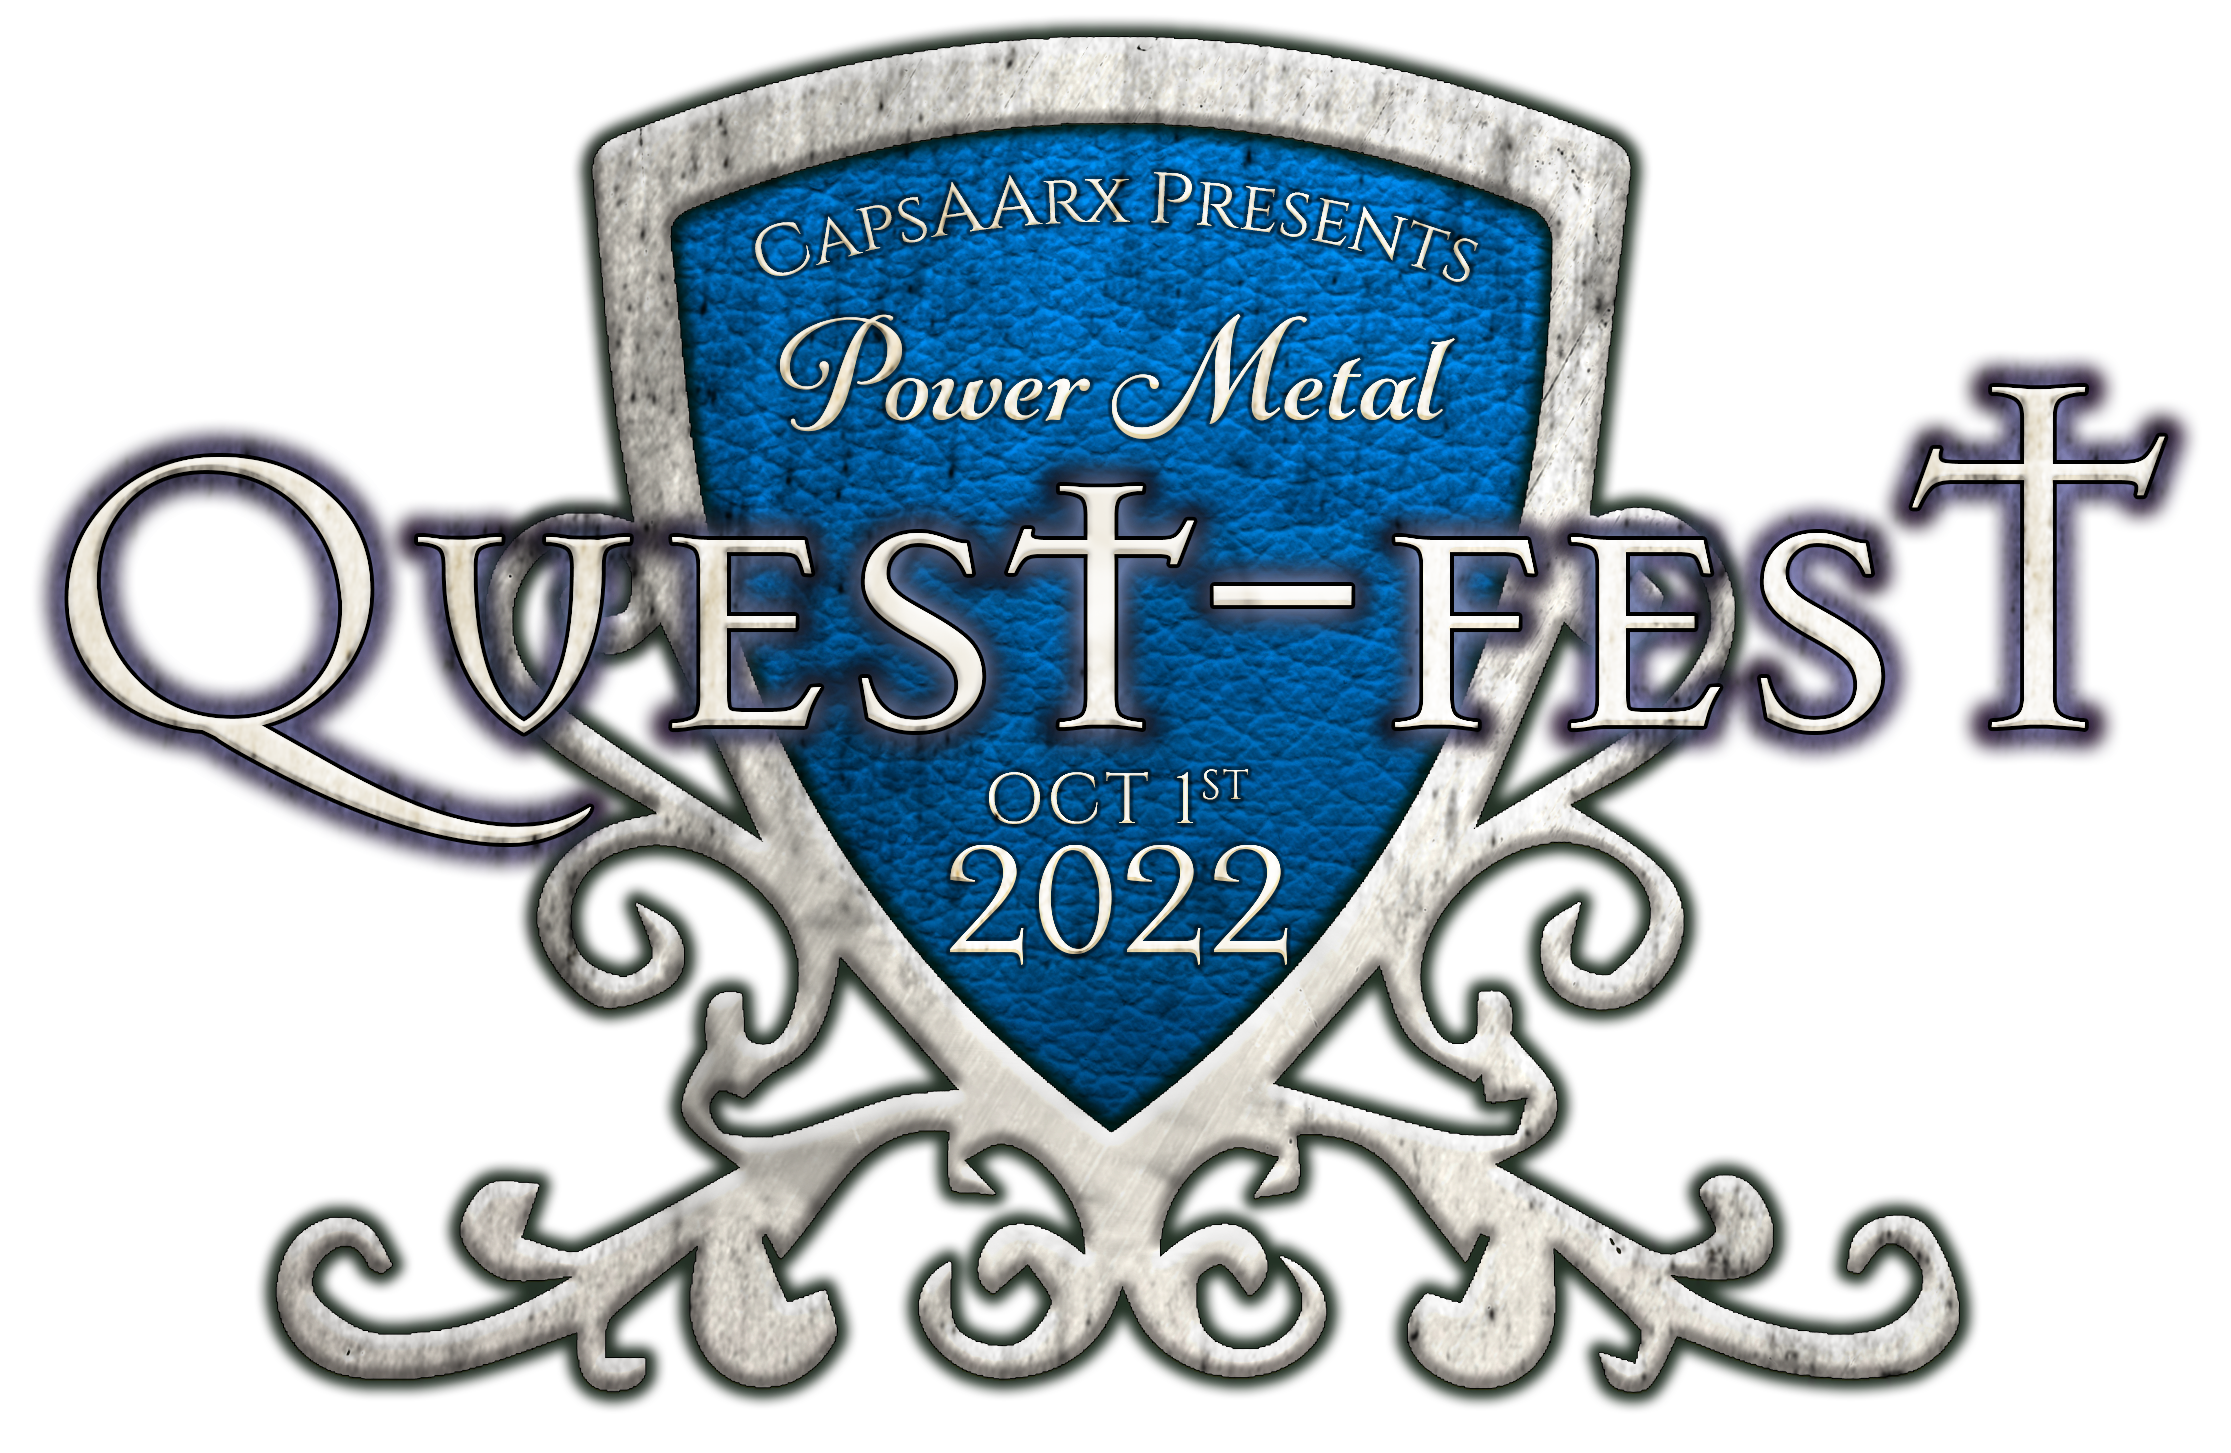 Power Metal Quest Fest 2022